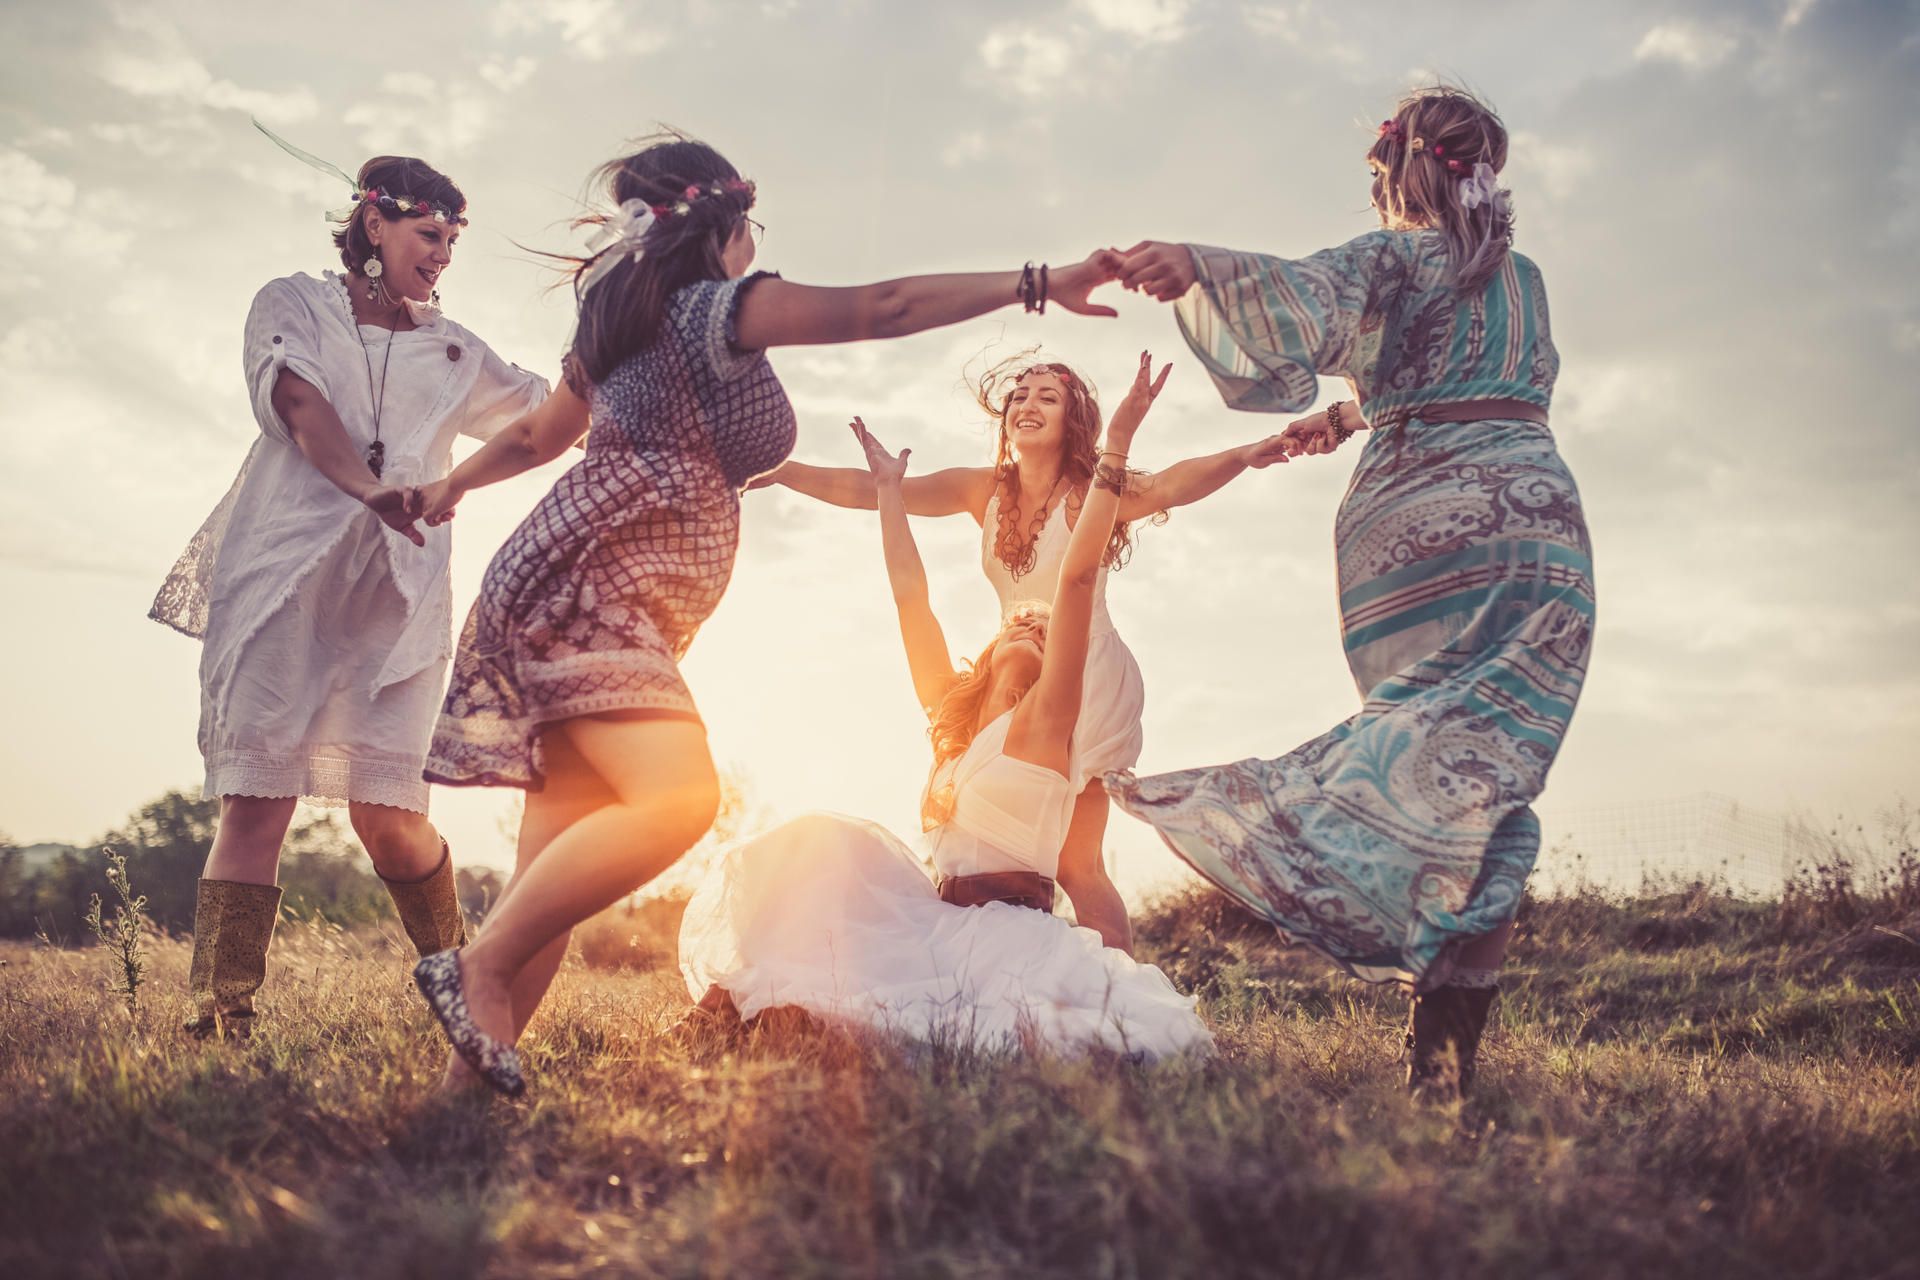 Frauen tanzen vergnügt auf einer Wiese im Kreis - sie feiern ein Jahreskreisfest und fassen sich dabei an die Hände